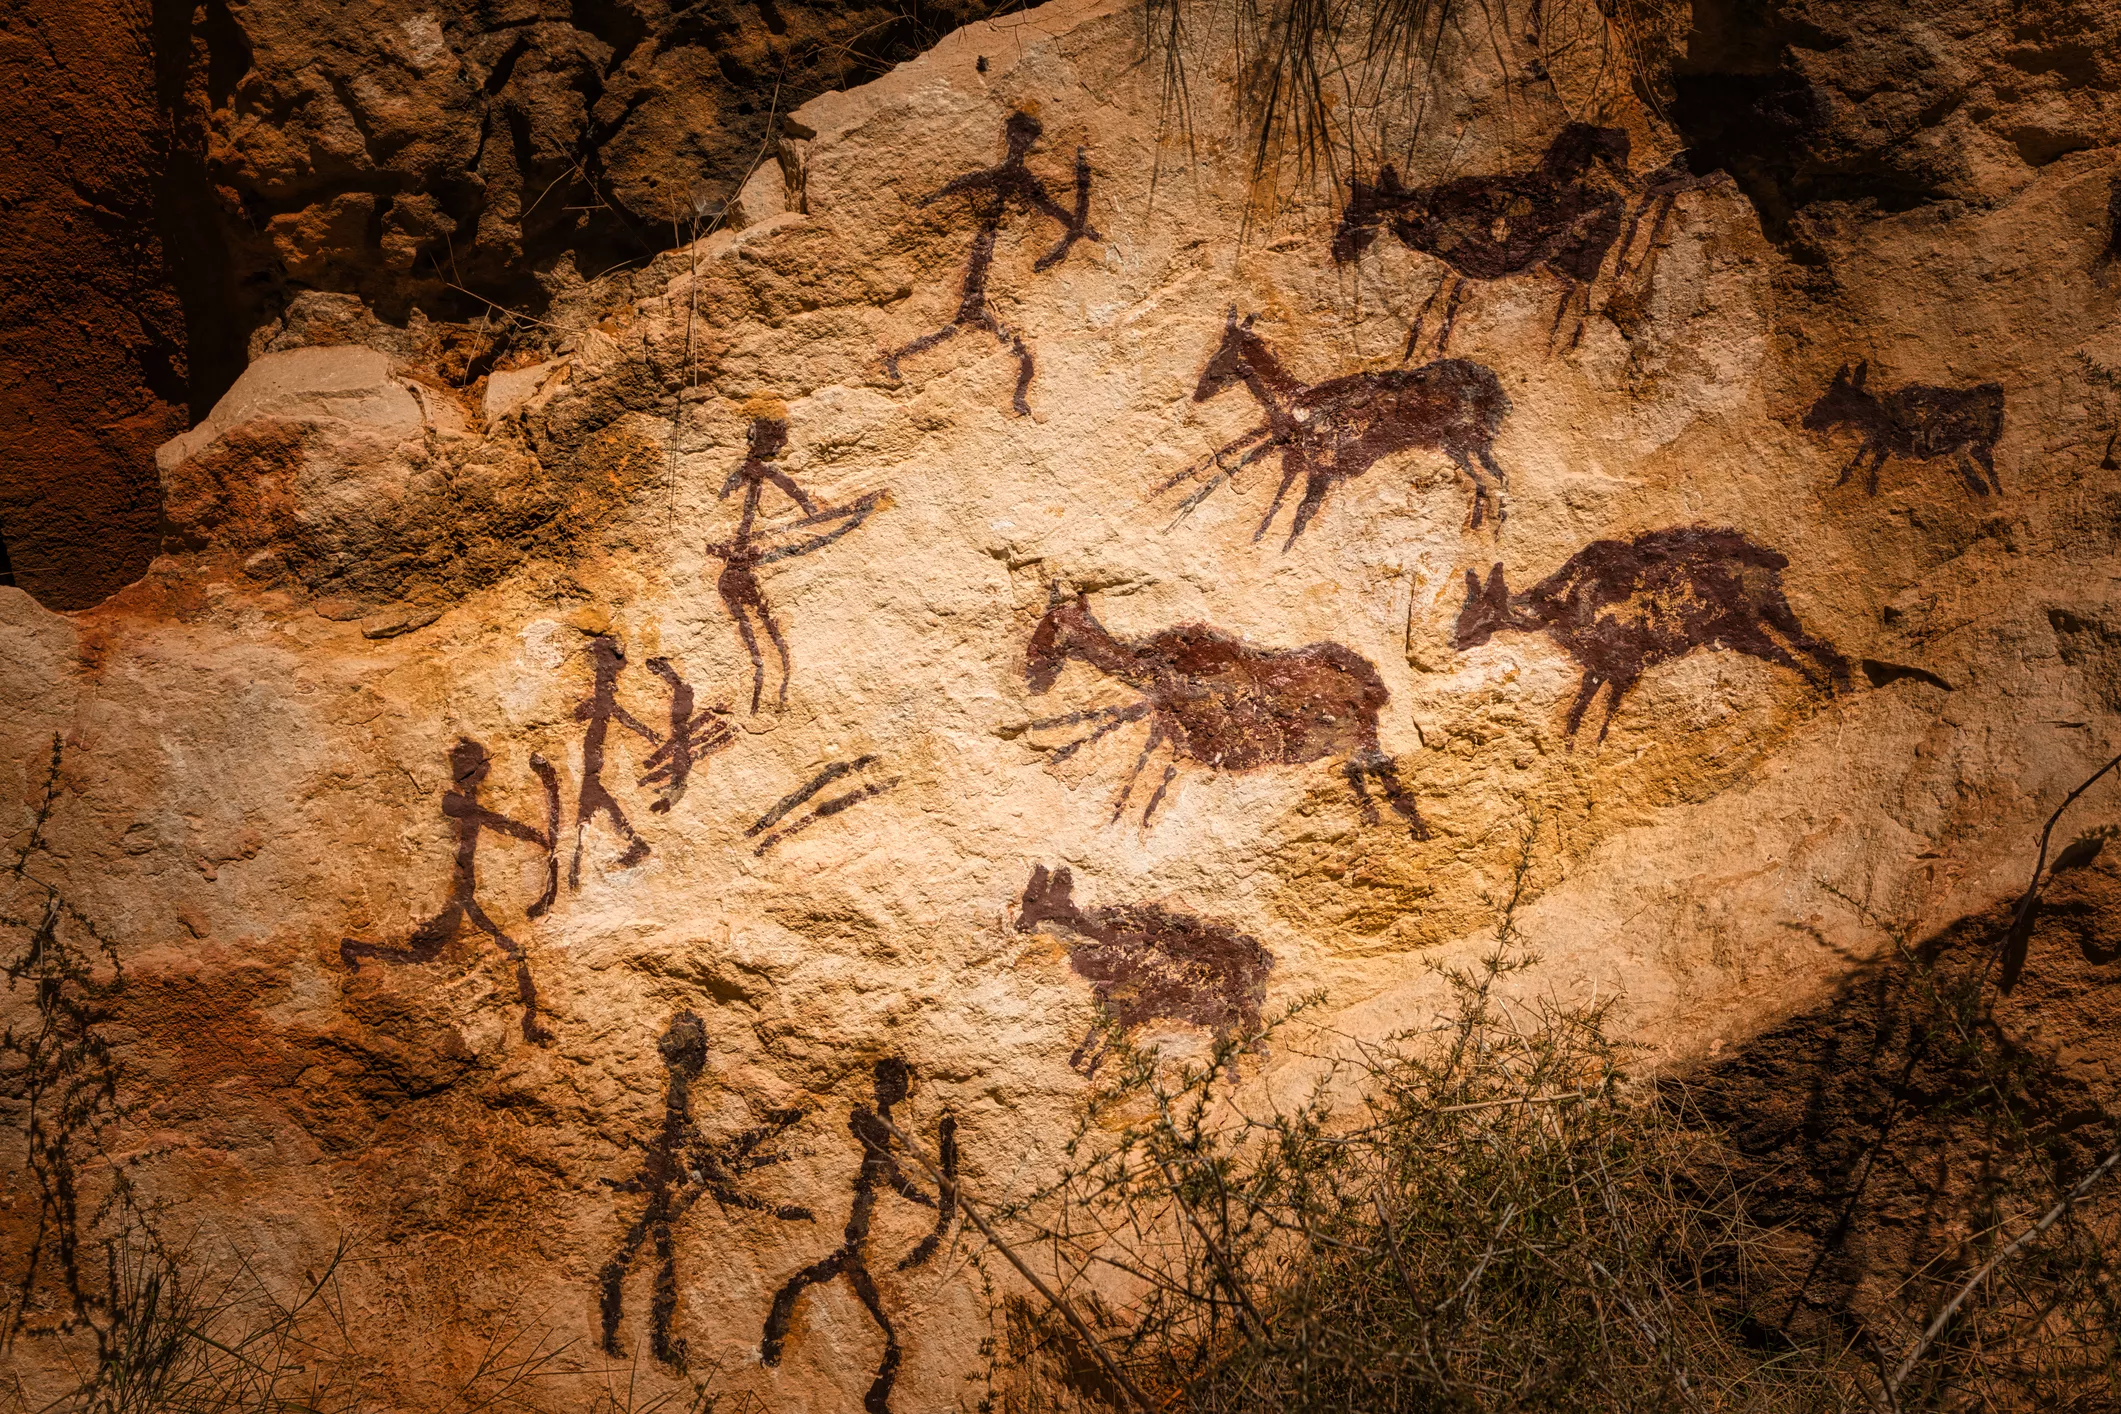 La caça era molt important pels neandertals